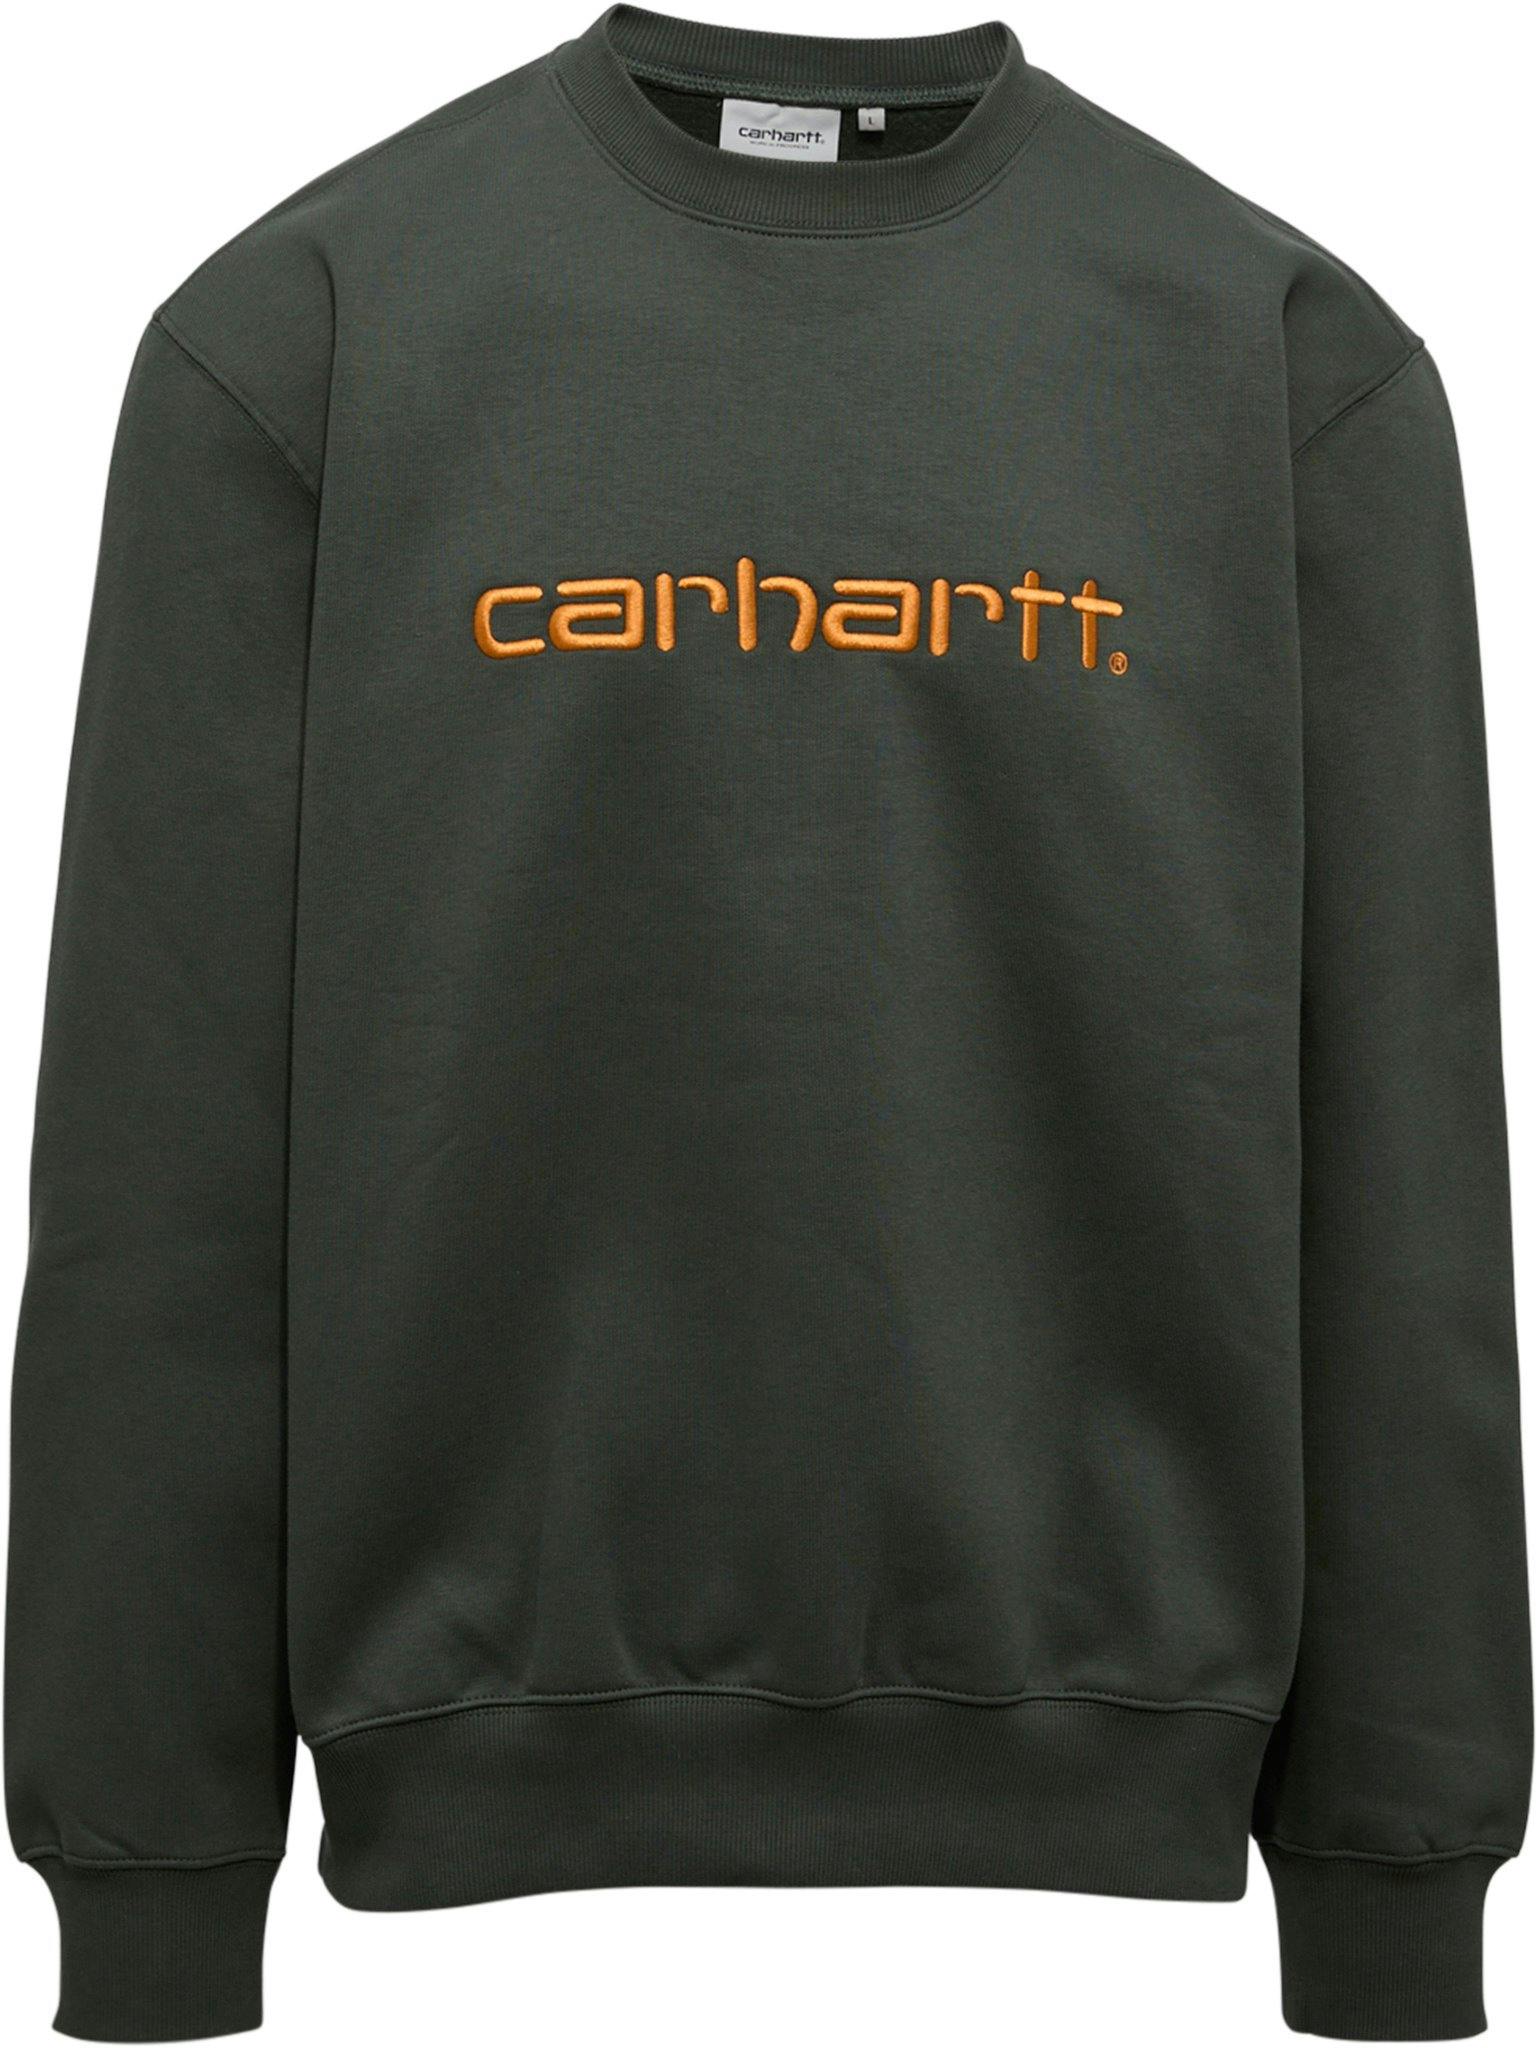 Product image for Carhartt Sweatshirt - Men's